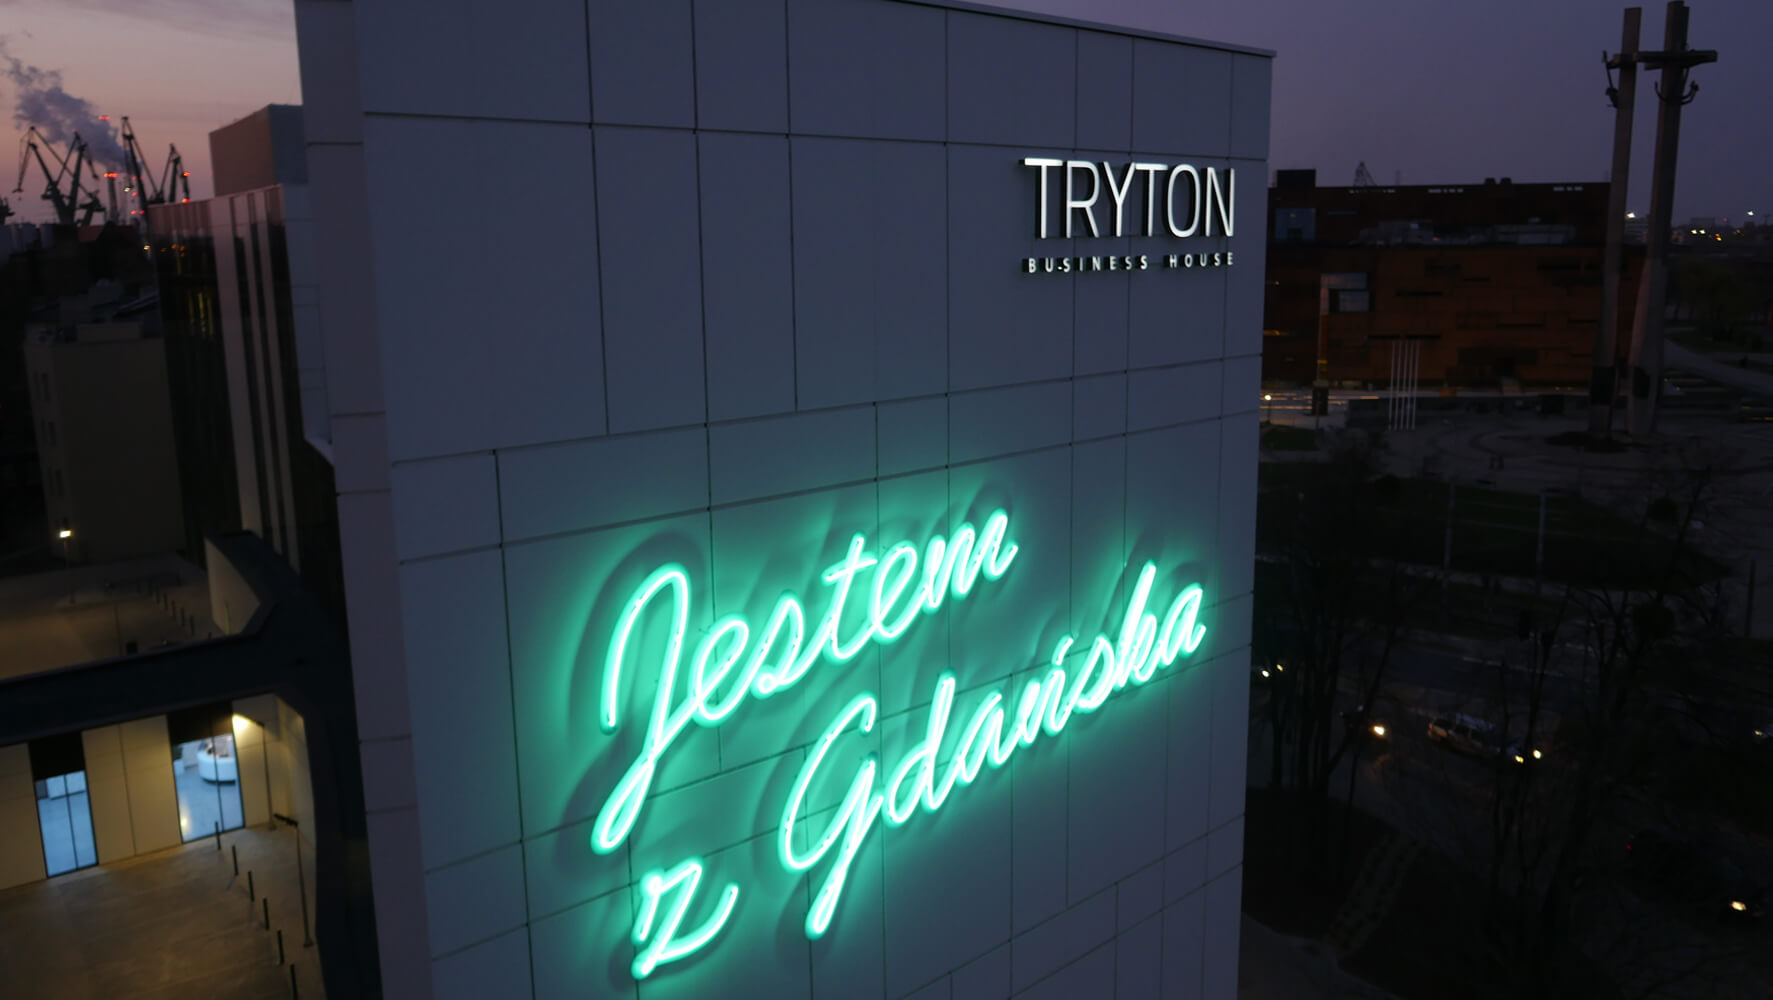 Tritón - Tryton - inscripción "Soy de Gdańsk" creada a partir de carteles de neón, colocada en la fachada